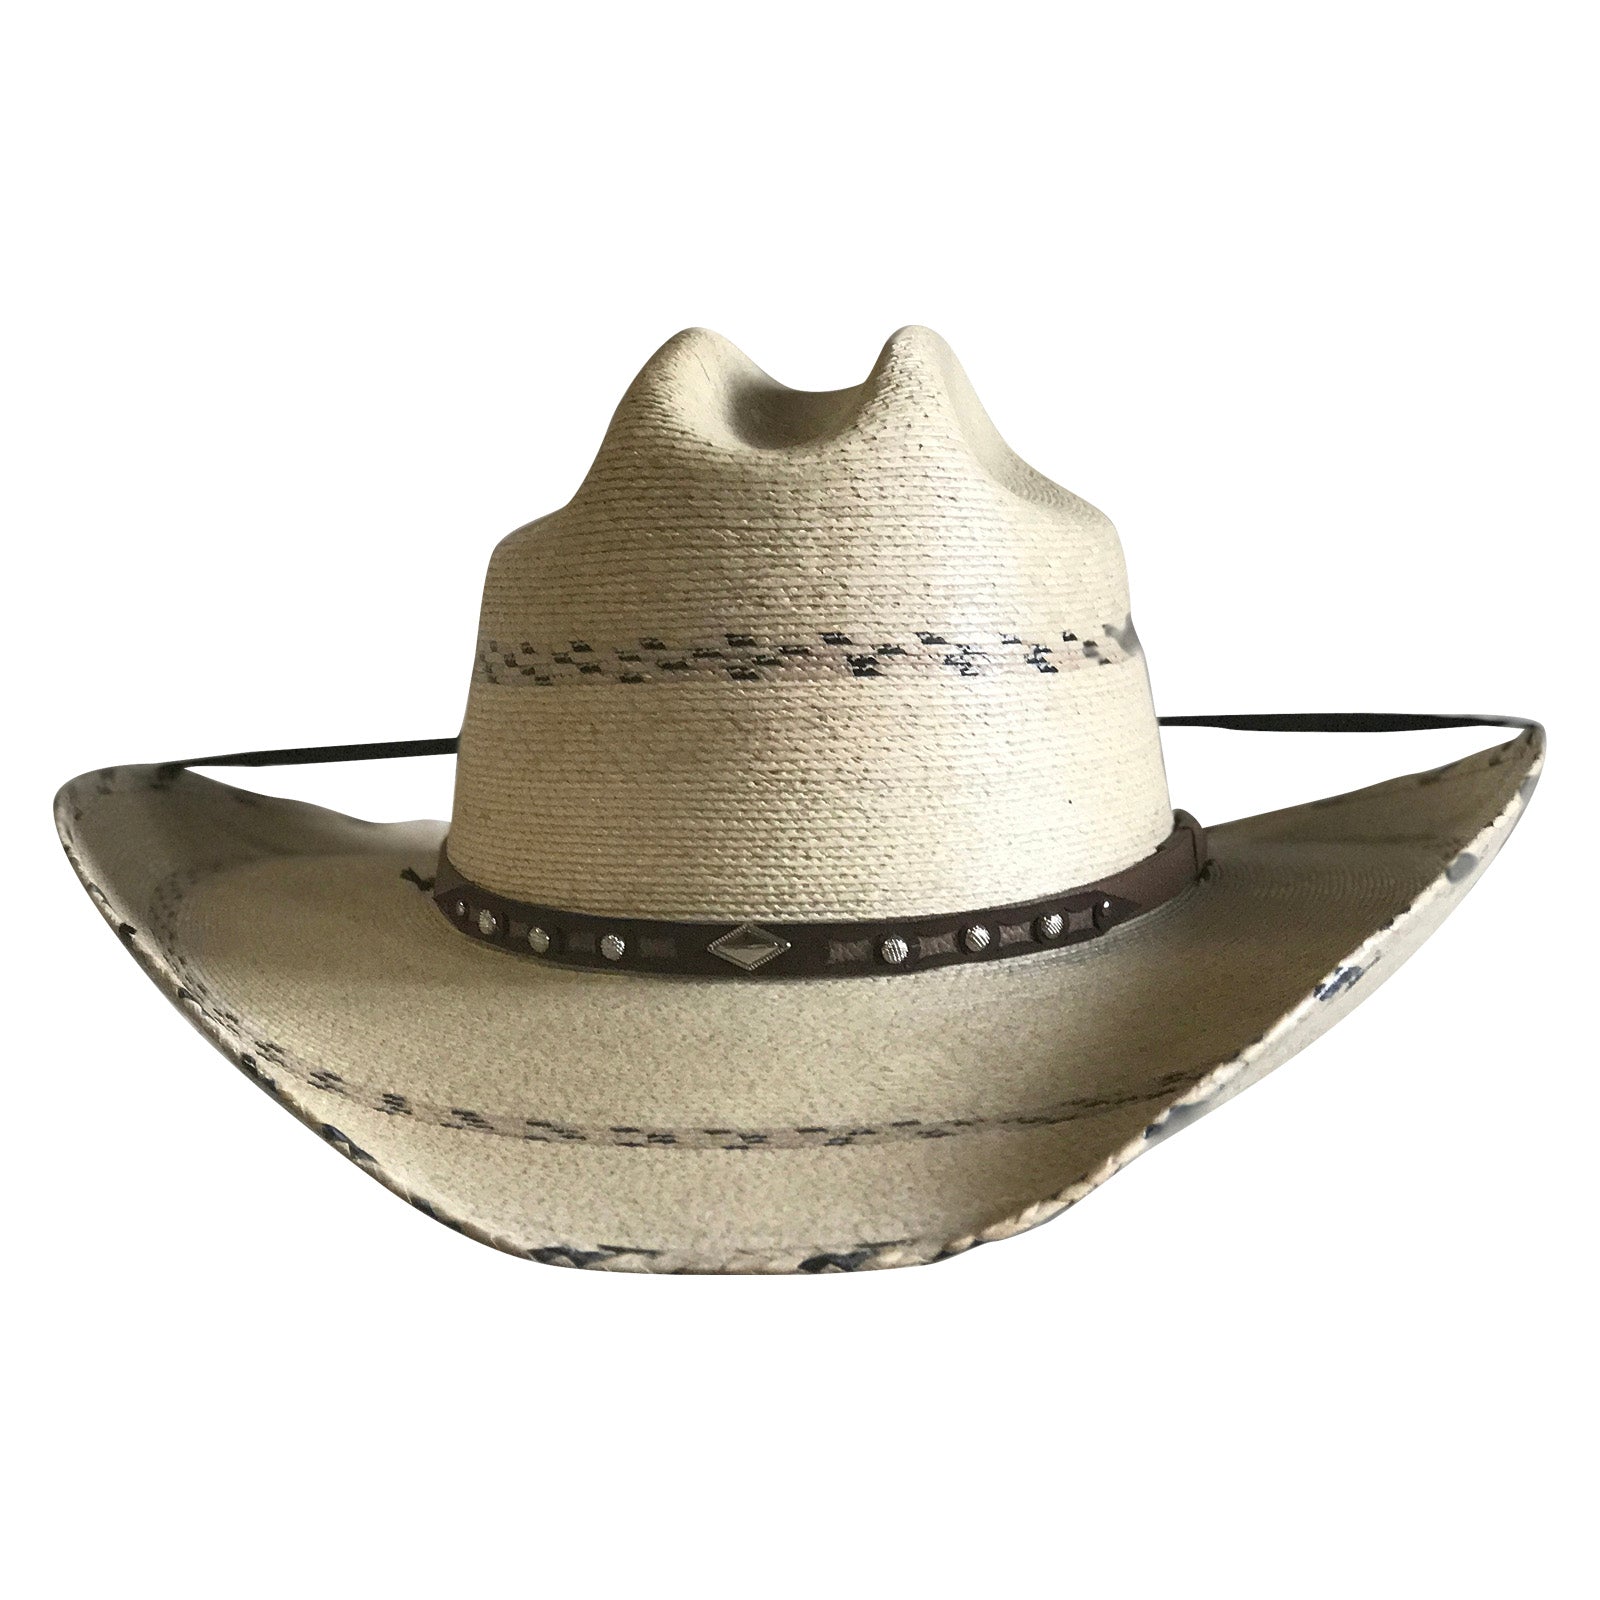 Cattleman Cowboy Hat band